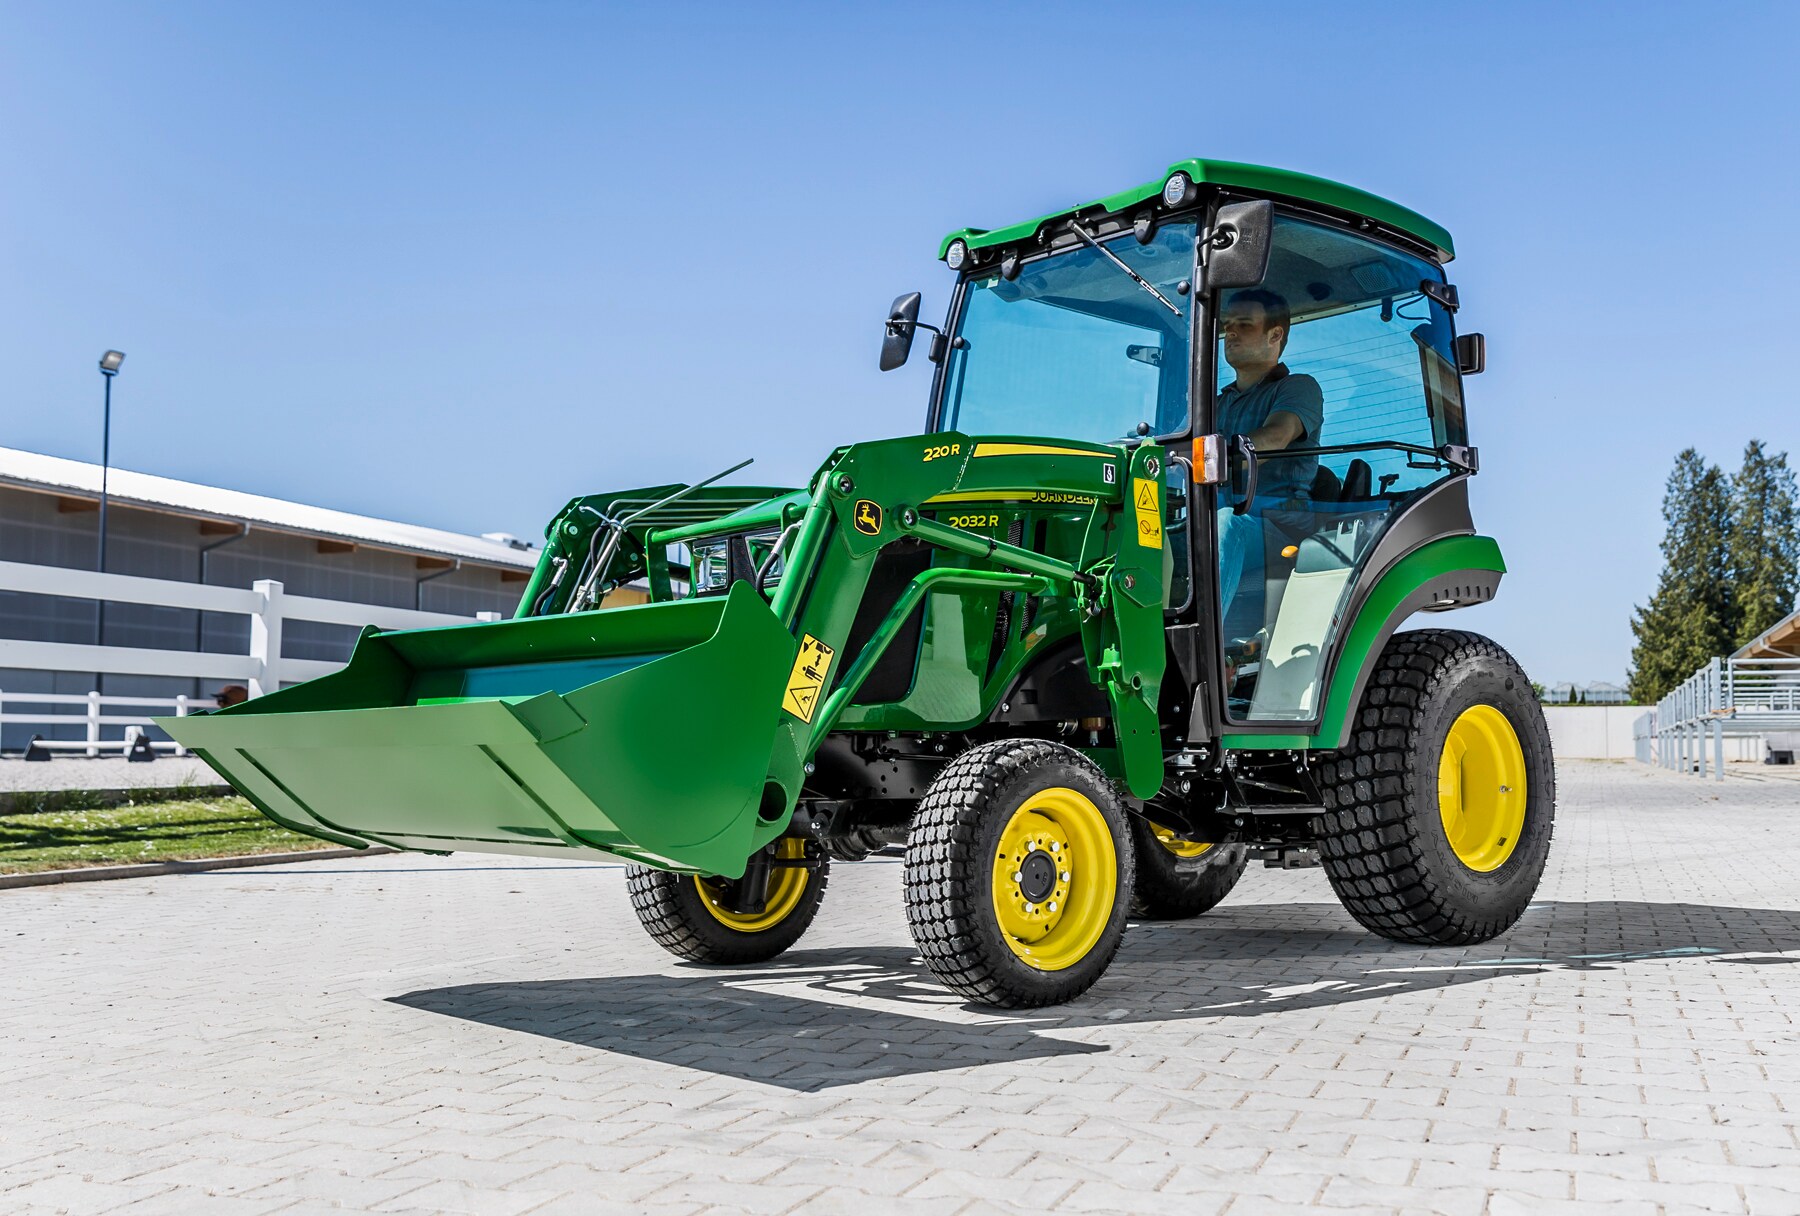 New John Deere 2032R compact tractor